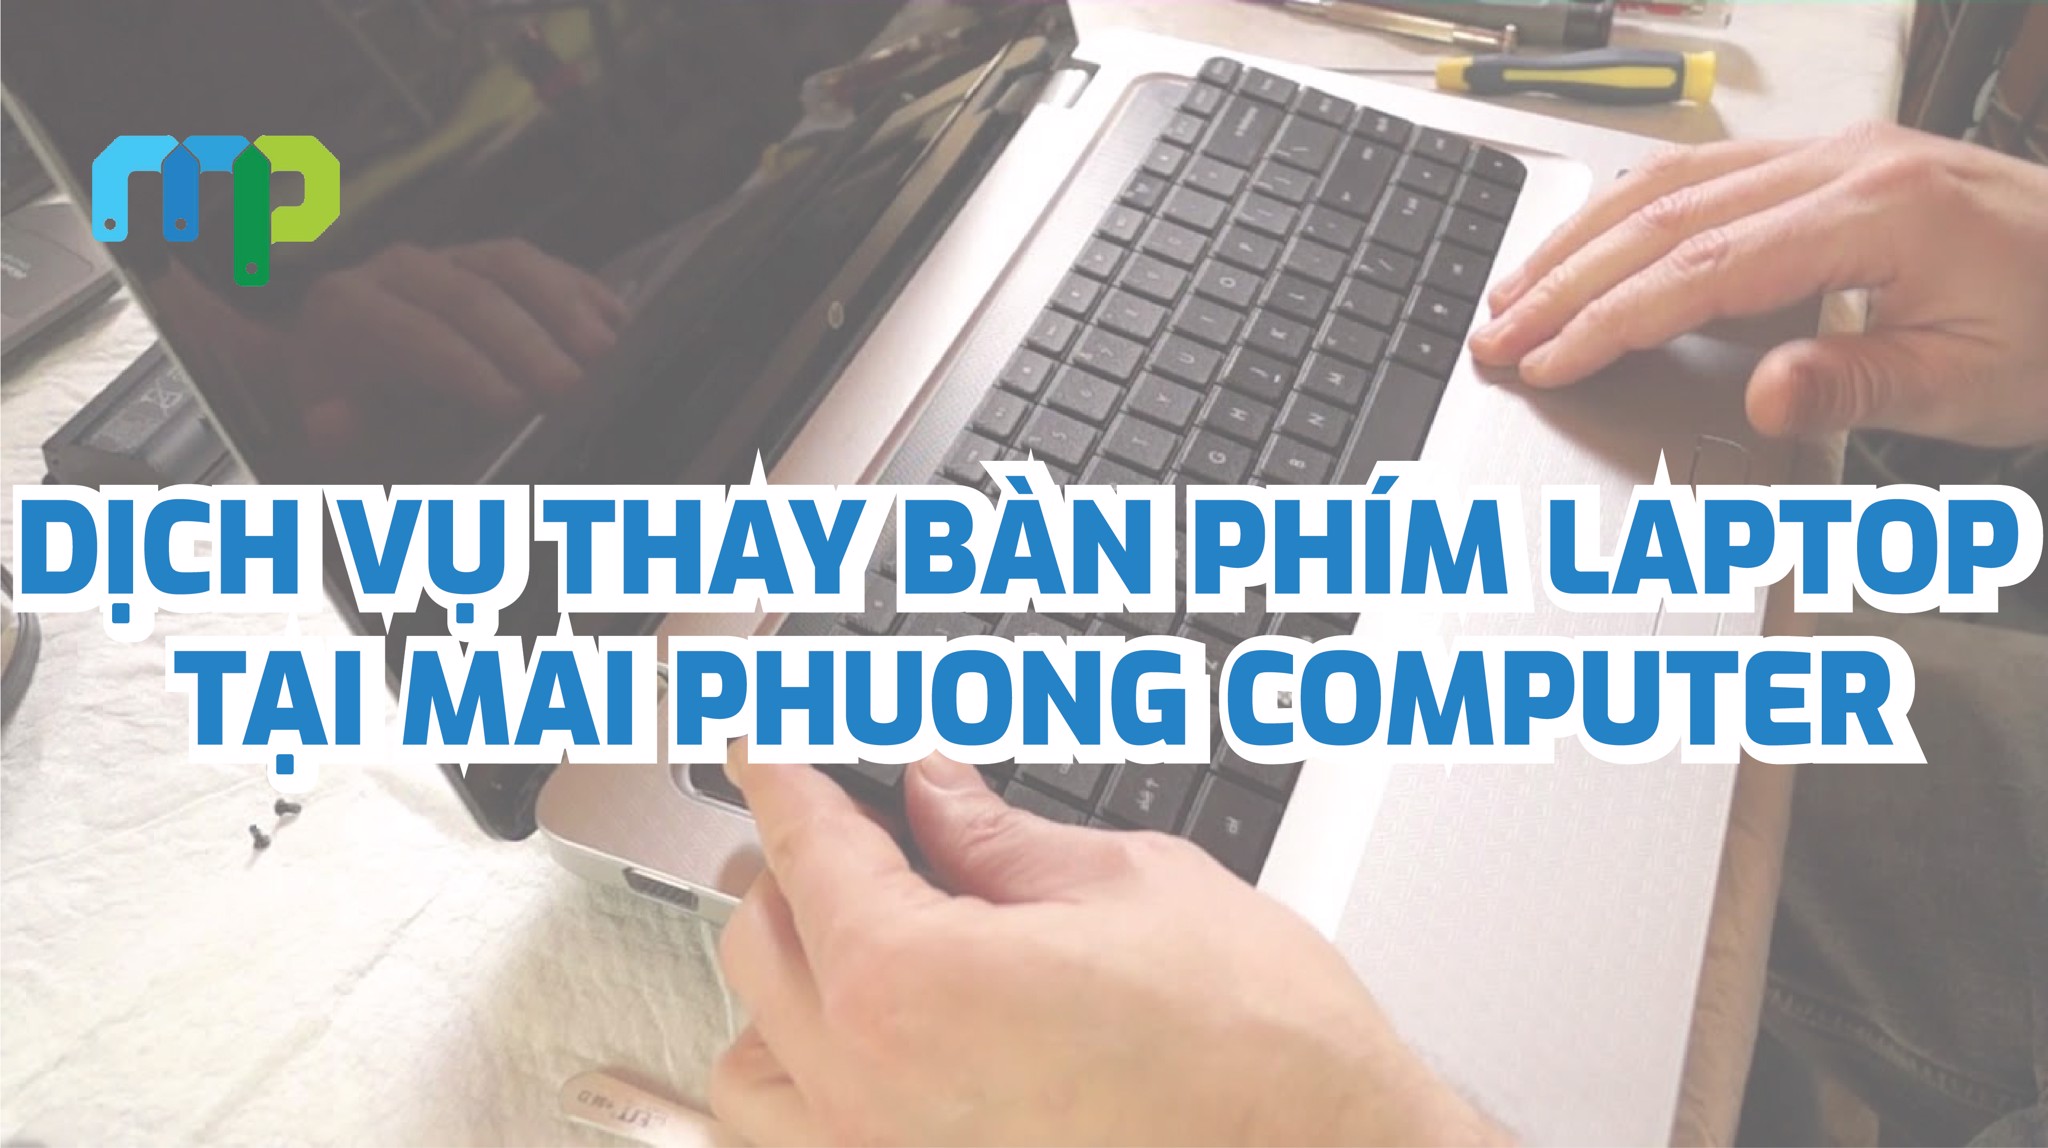 Dịch vụ thay bàn phím Laptop tại Mai Phuong Computer